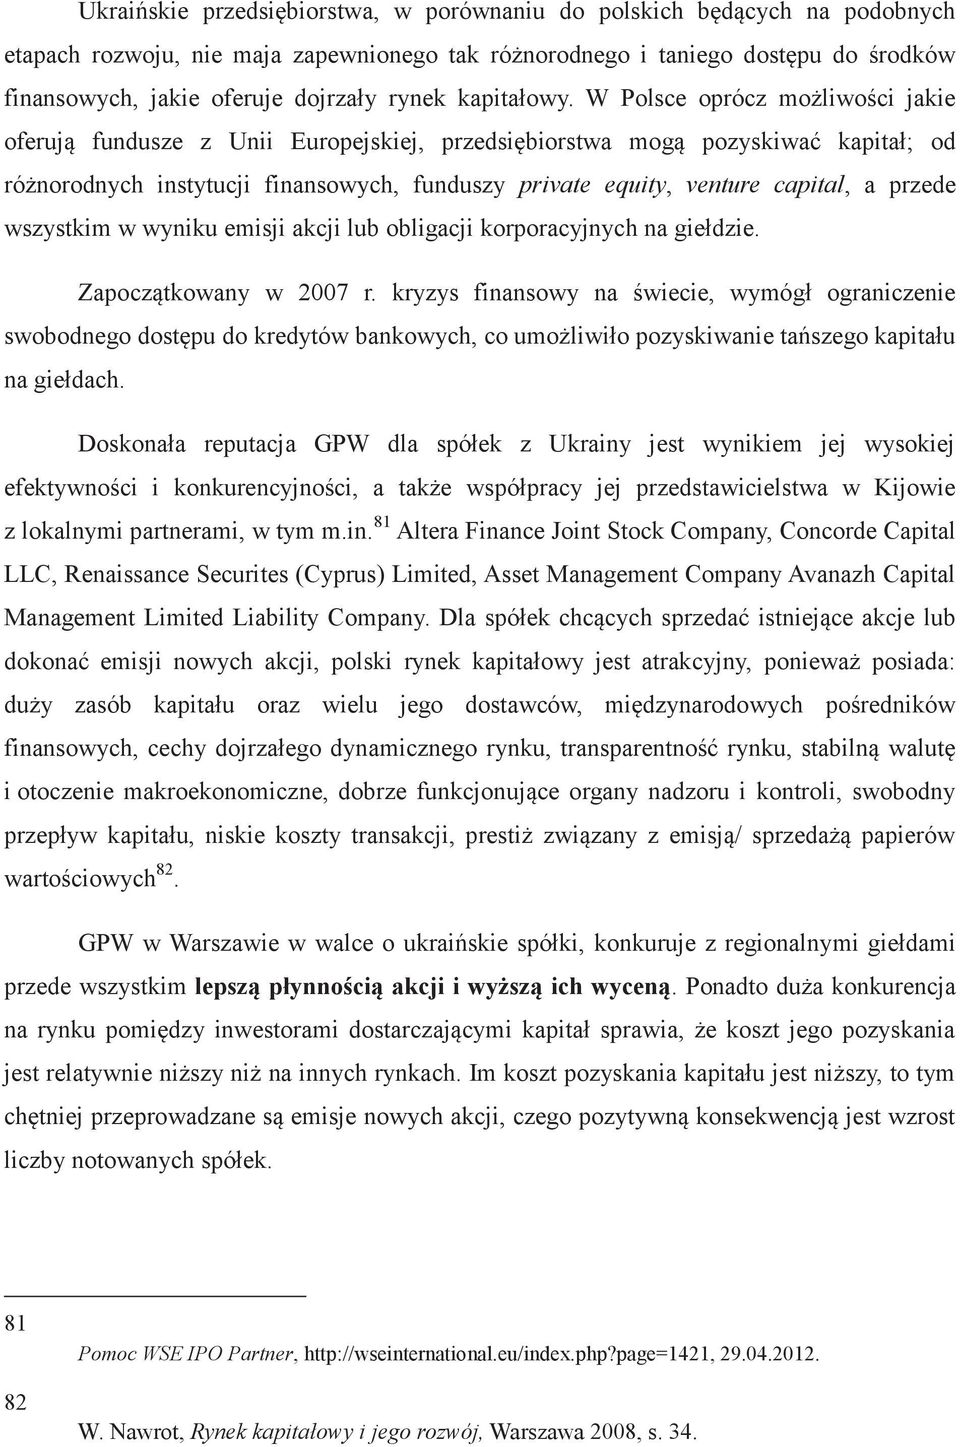 W Polsce oprócz możliwości jakie oferują fundusze z Unii Europejskiej, przedsiębiorstwa mogą pozyskiwać kapitał; od różnorodnych instytucji finansowych, funduszy private equity, venture capital, a